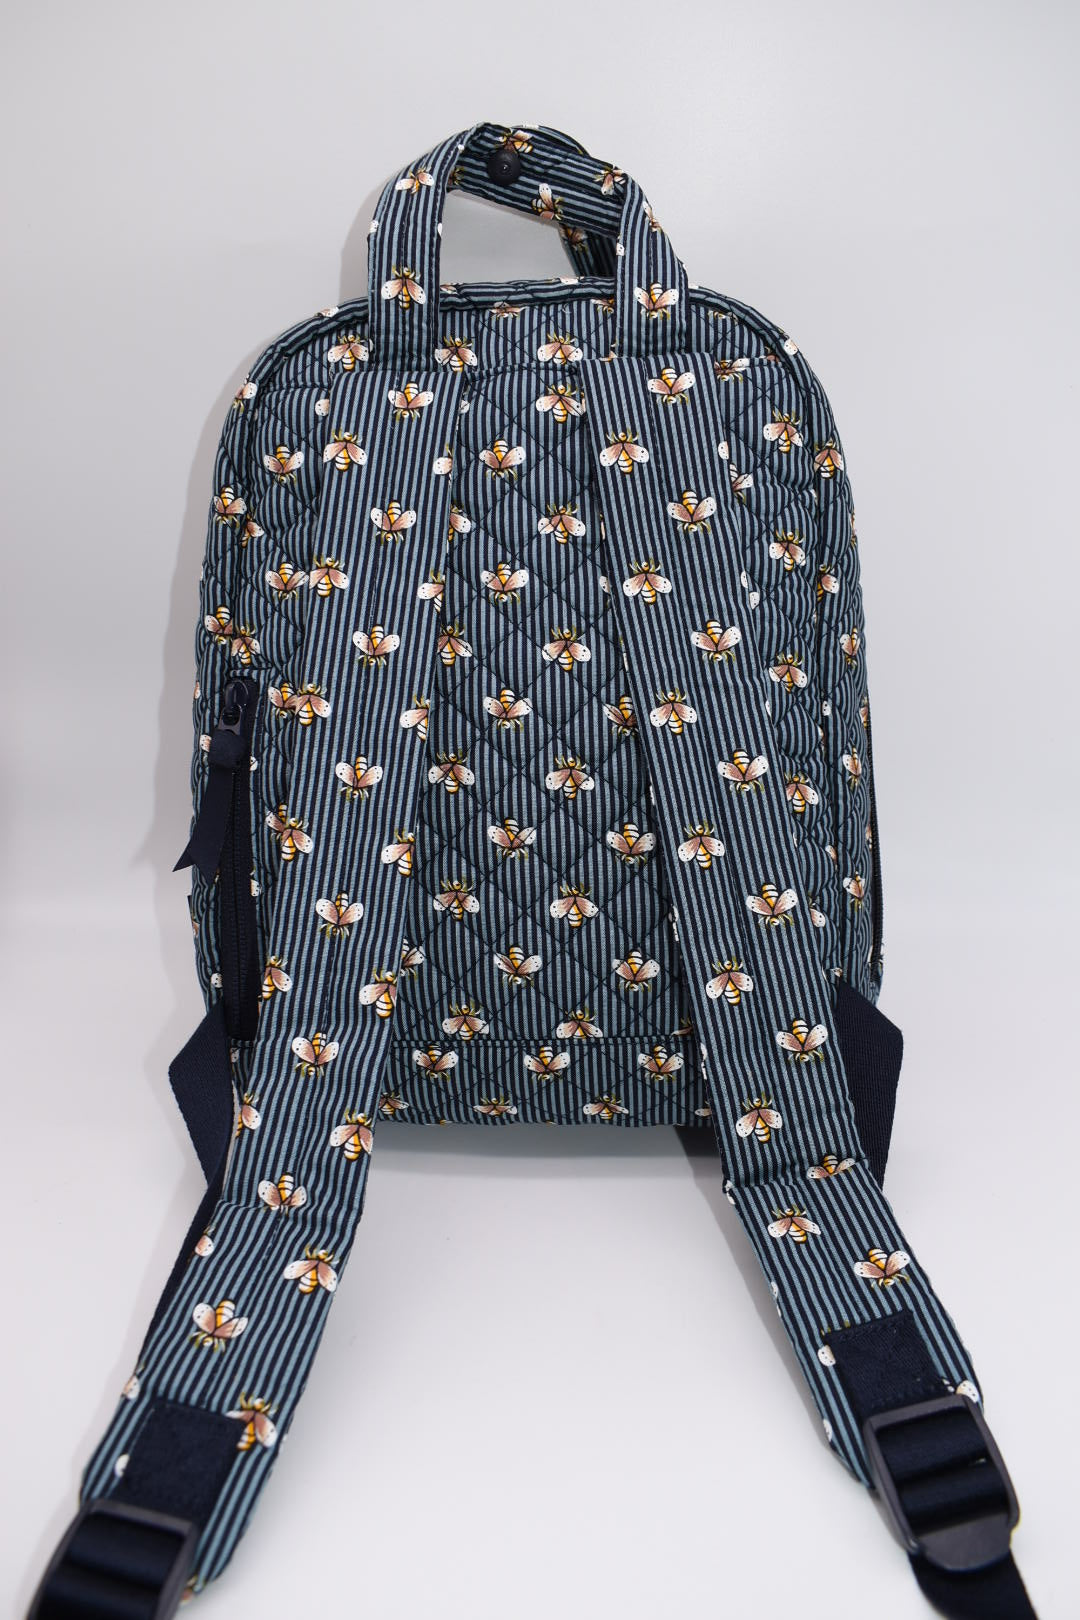 Vera Bradley Mini Totepack Bag in "Bees Navy" Pattern